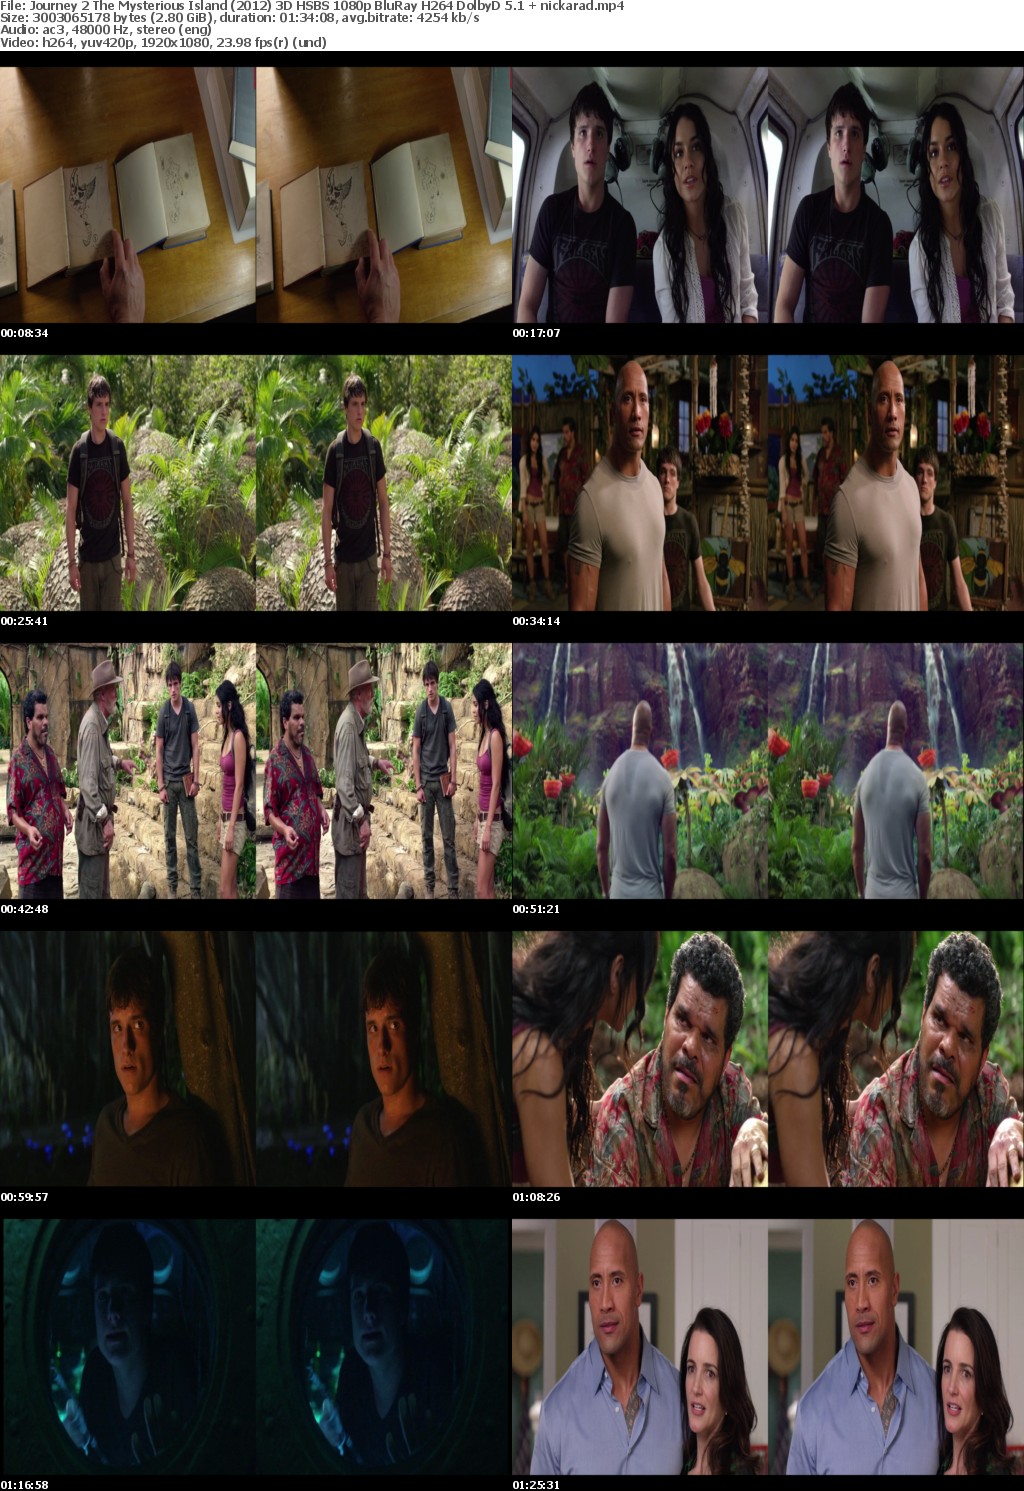 Journey 2 The Mysterious Island (2012) 3D HSBS 1080p BluRay H264 DolbyD 5 1 nickarad